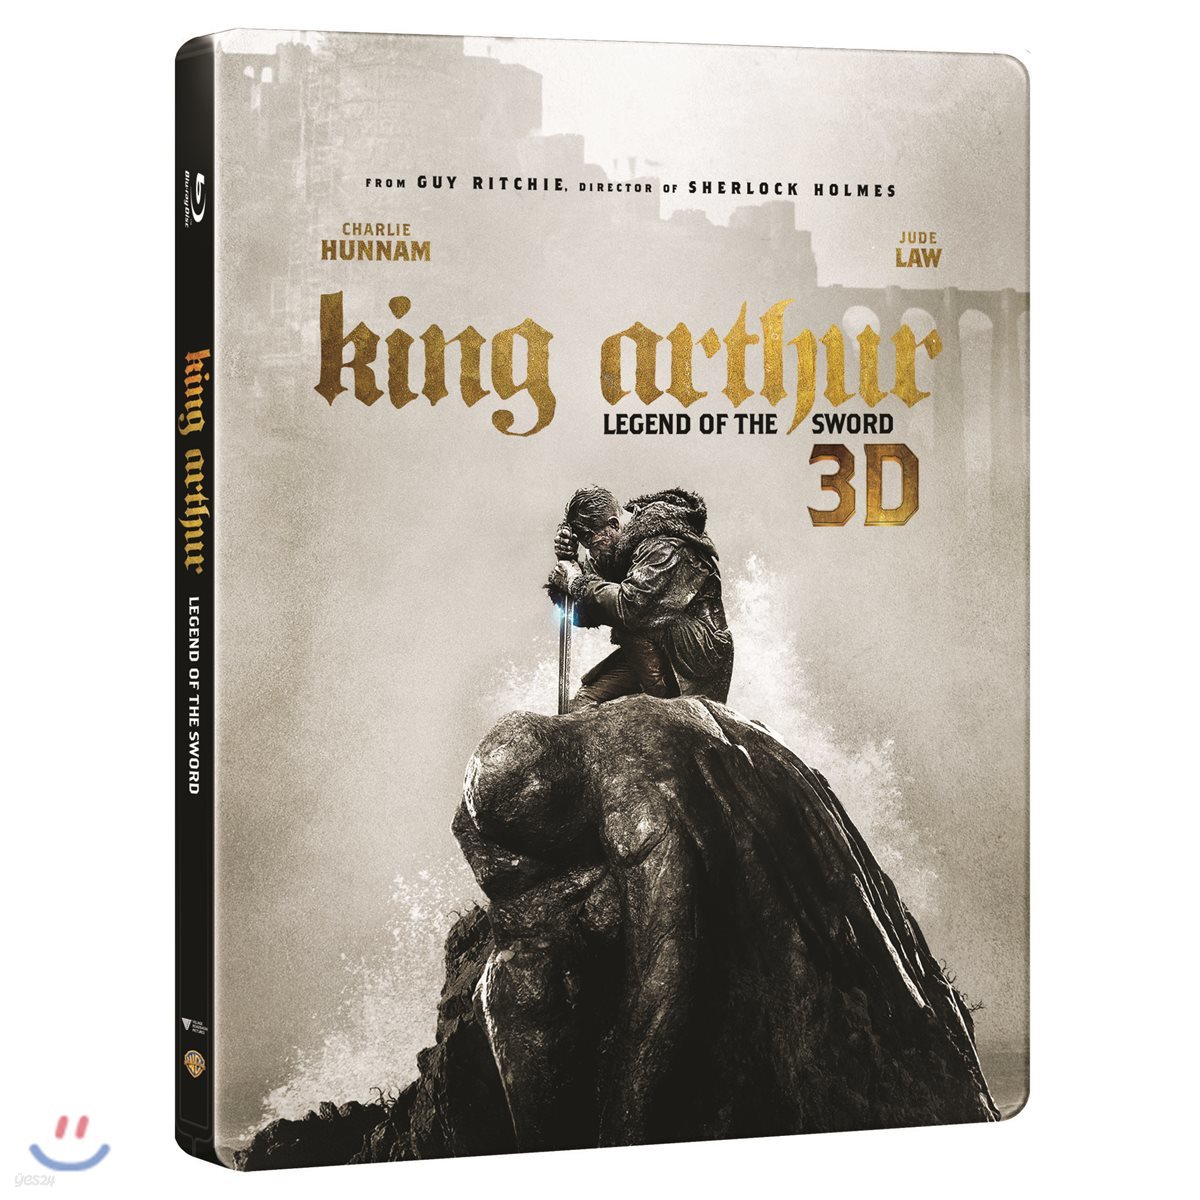 킹 아서:제왕의 검 (2Disc 2D+3D 스틸북 한정수량) : 블루레이